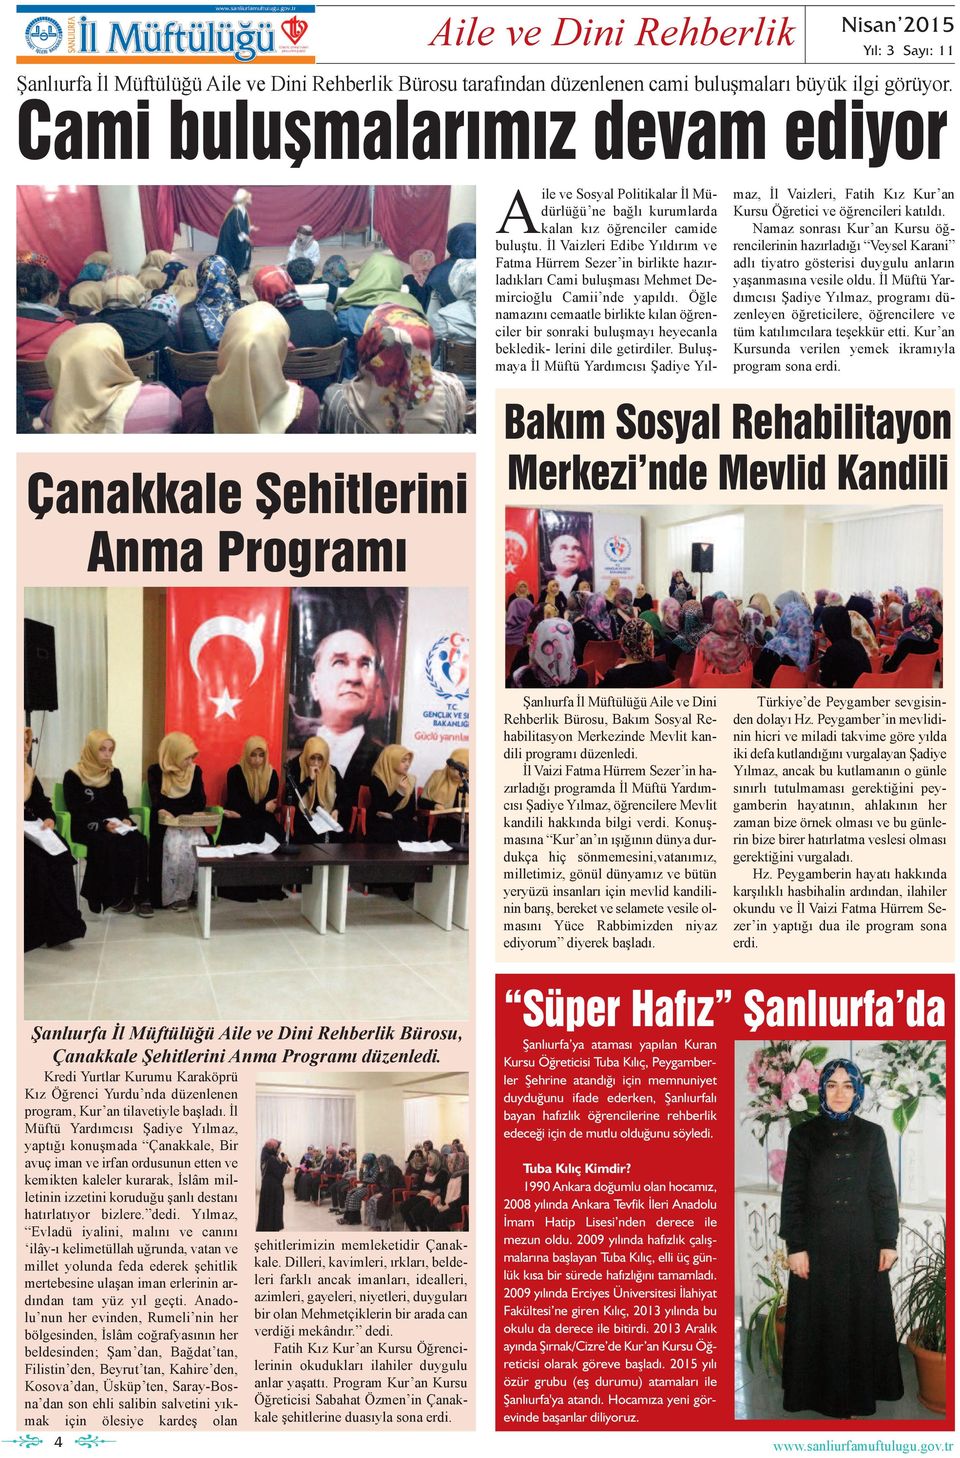 İl Vaizleri Edibe Yıldırım e Fatma Hürrem Sezer in birlikte hazırladıkları Cami buluşması Mehmet Demircioğlu Camii nde yapıldı.